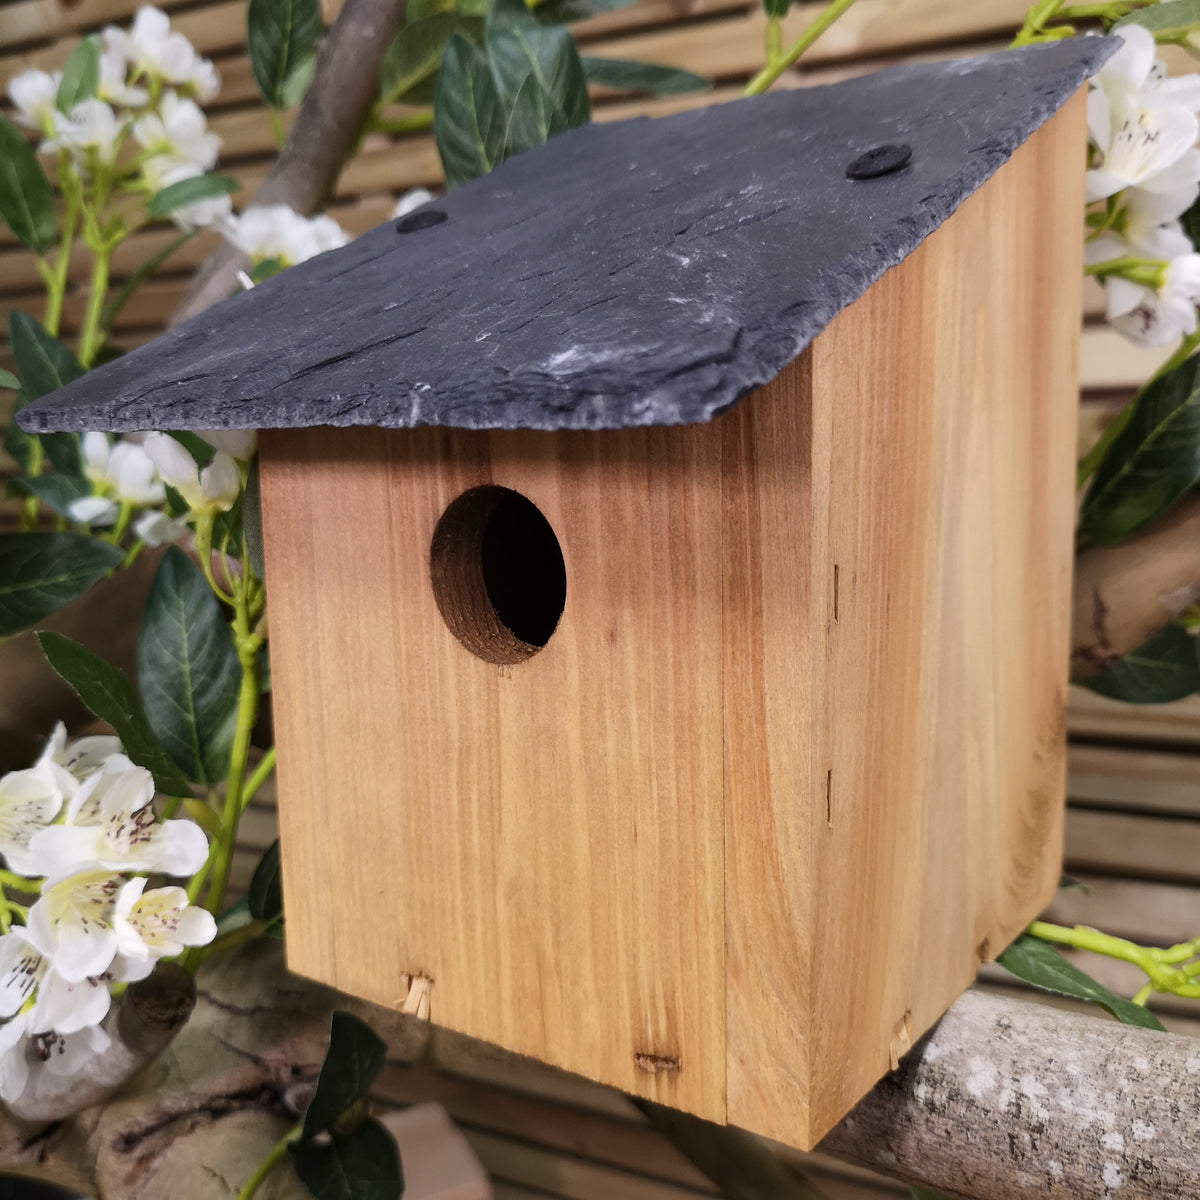 Sledmere Wooden Garden Wild Bird Nest Box-32mm Entrance Hole